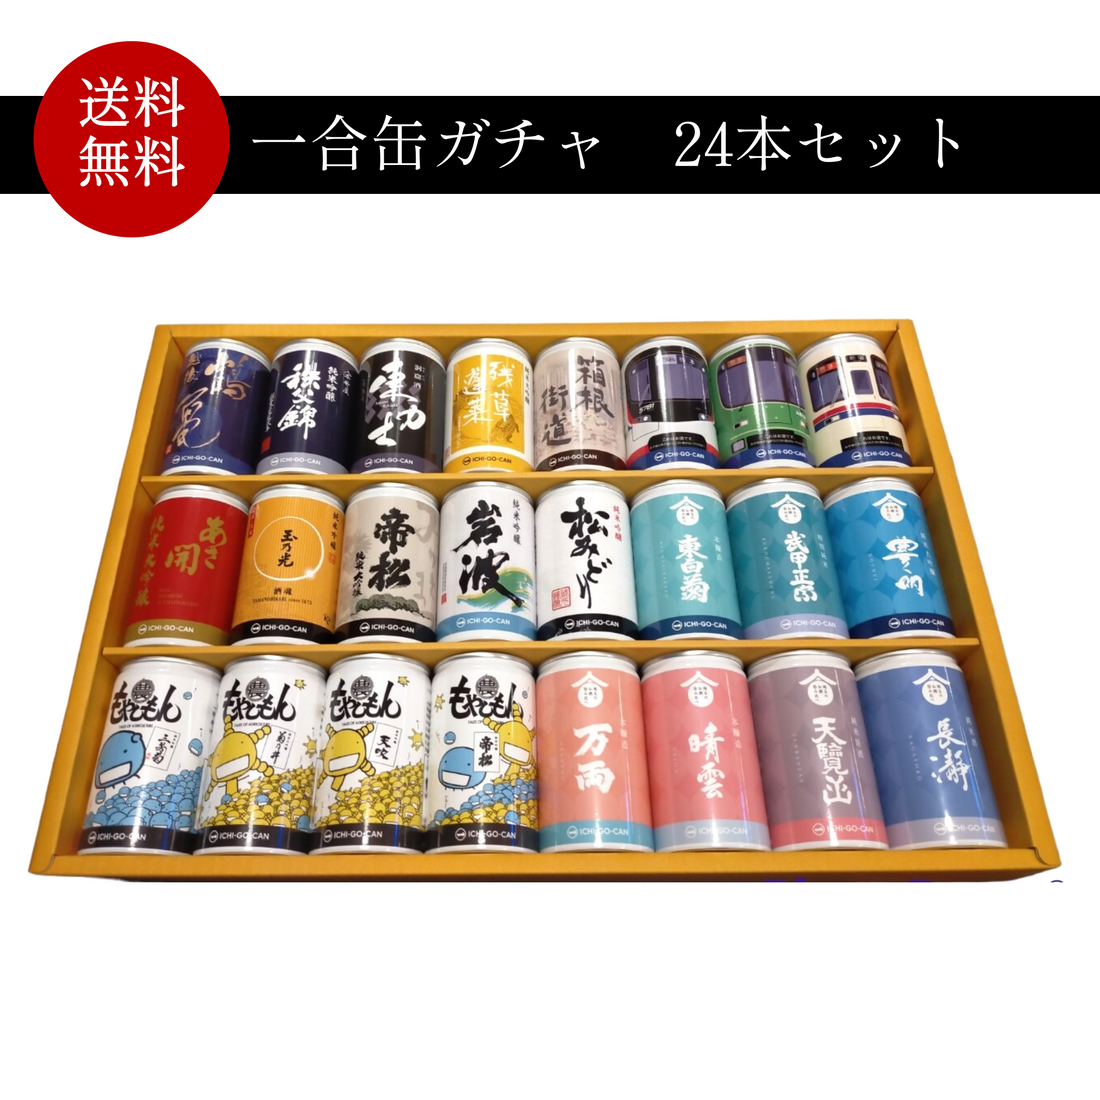 【新商品】埼玉24蔵セット/一合缶ガチャ24本セットを販売開始します！